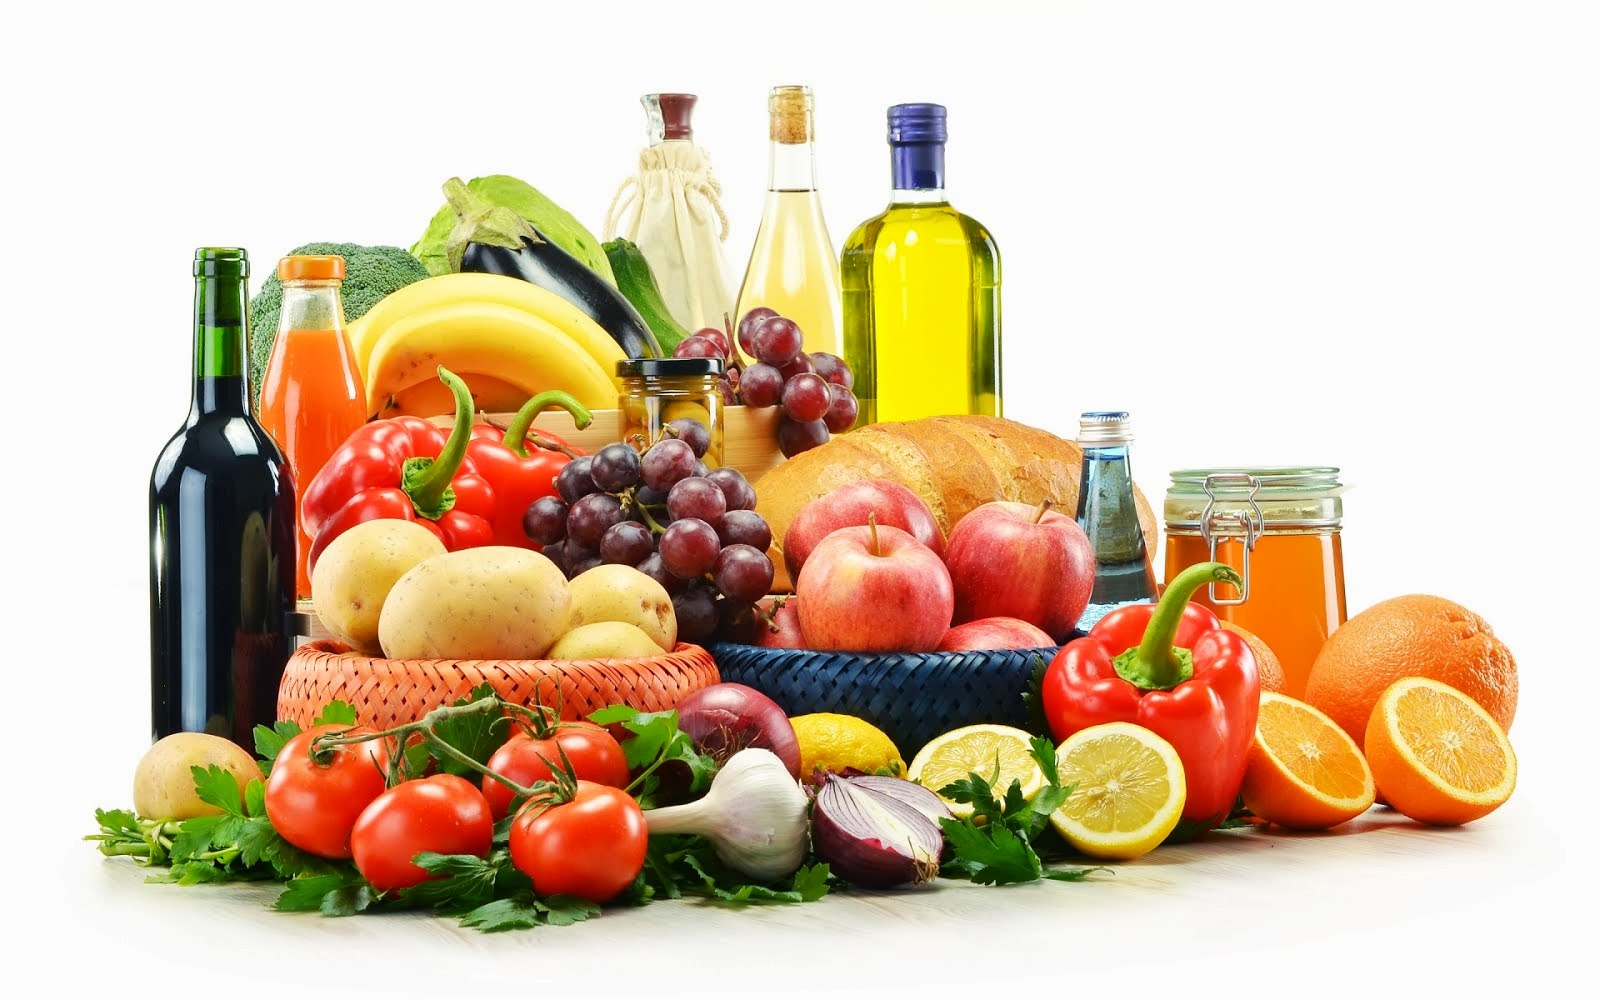 dieta mediterranea-alimentos que la componen